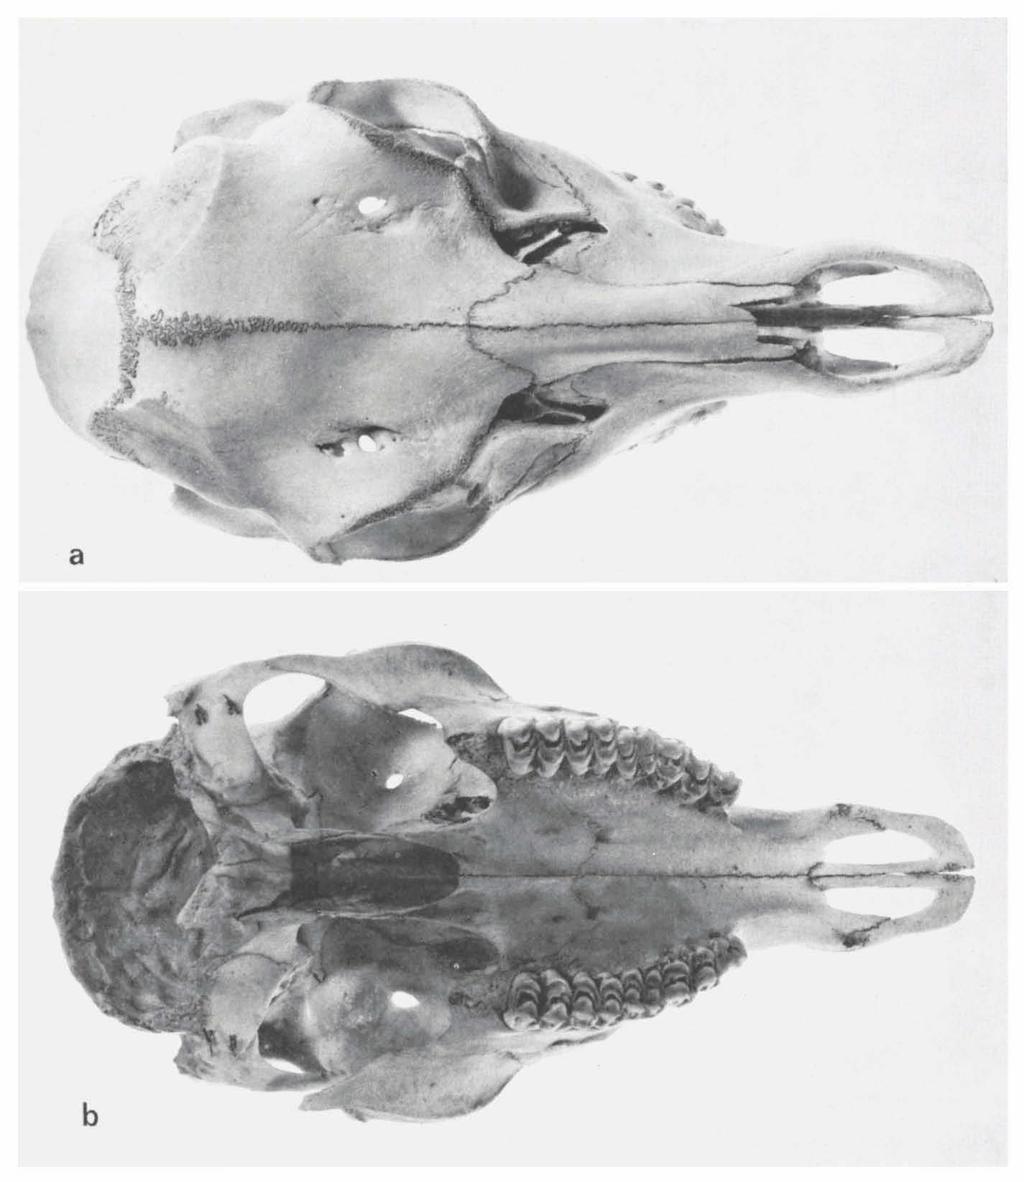 ZOOLOGISCHE MEDEDELINGEN 53 (2) PL. 3 Fig. a. Skull RMNH reg. nr.